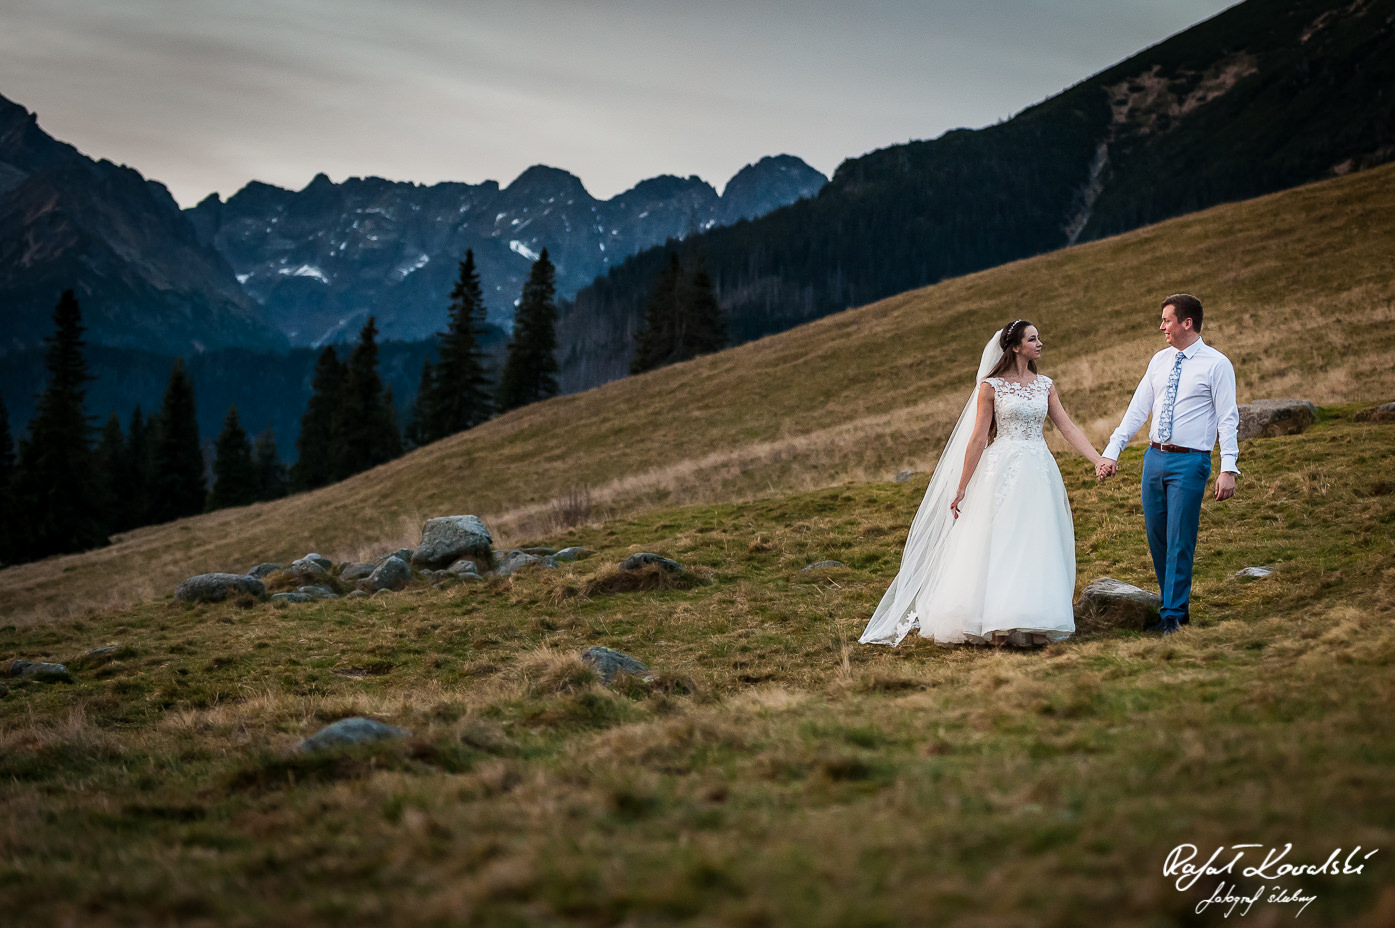 górska sceneria jest wyjątkowym tłem do ślubnych sesji zdjęciowych